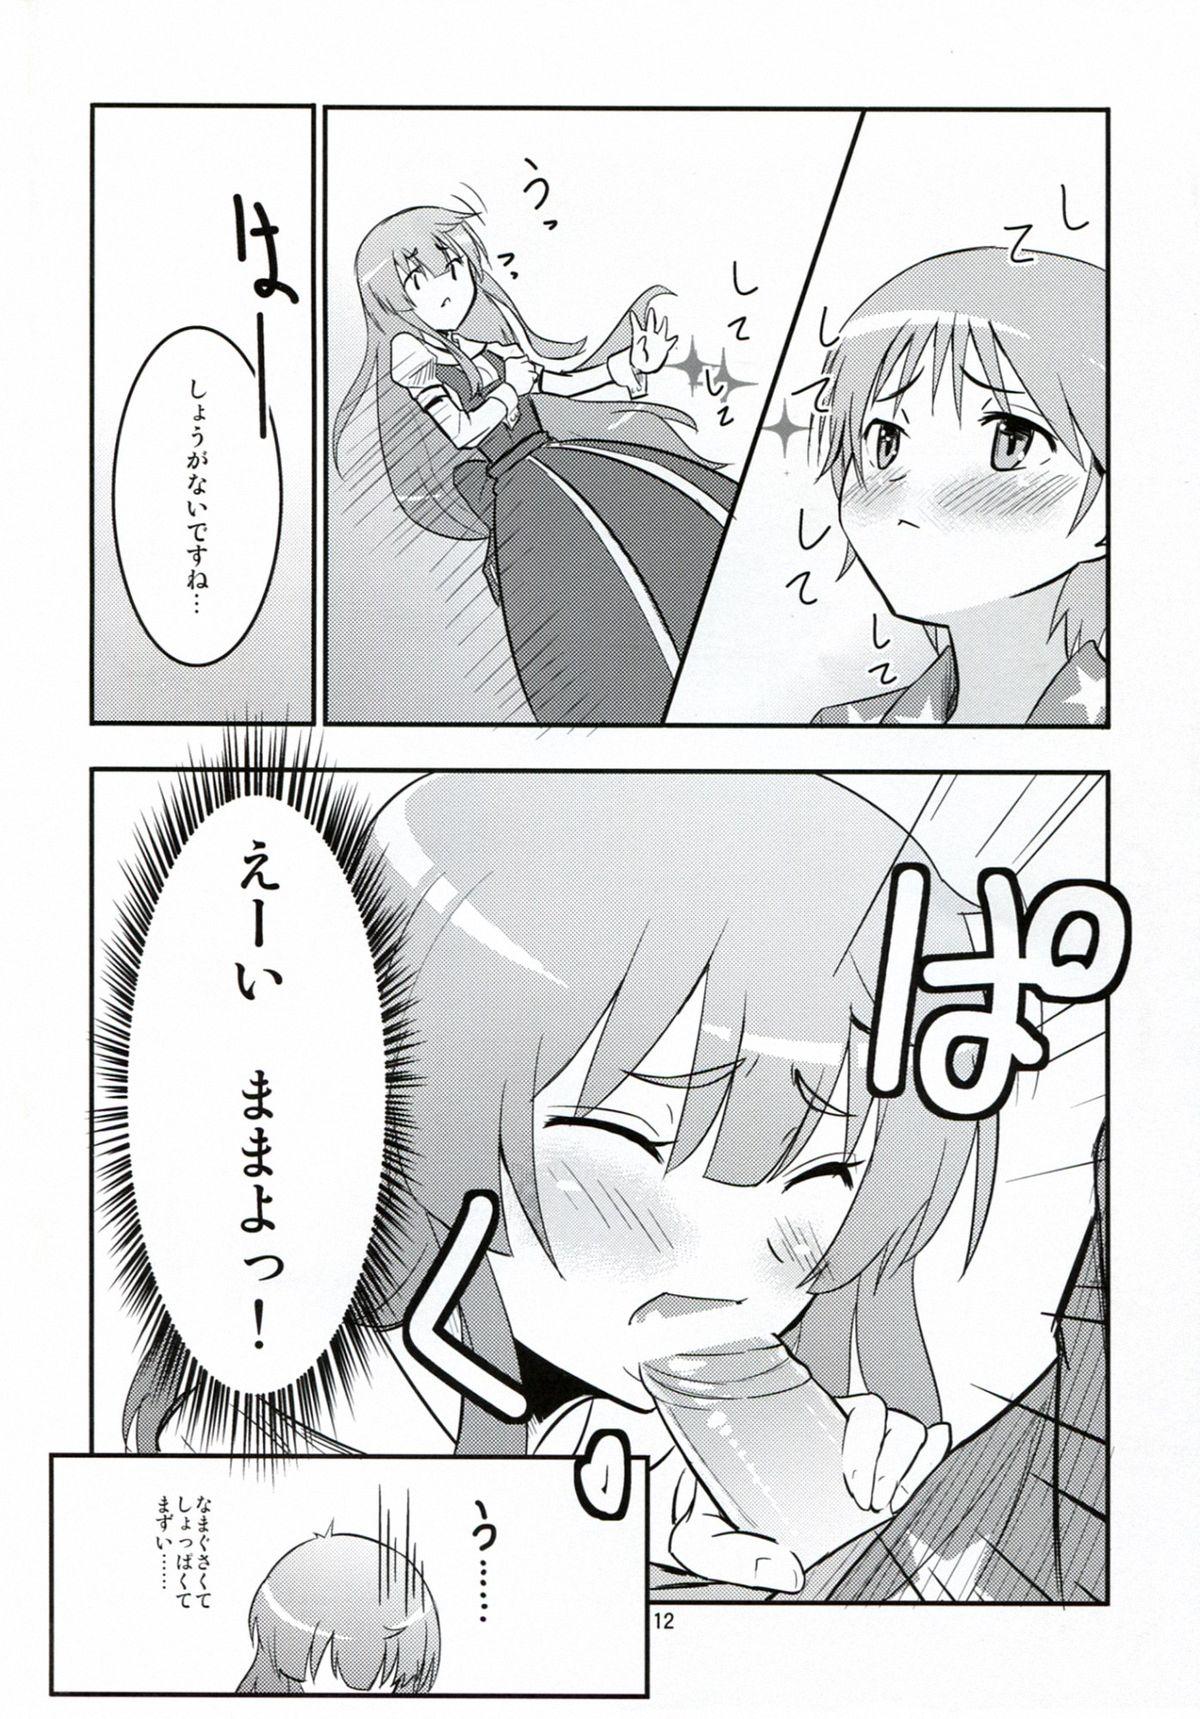 Tiny Titties Daitan na Kare - Jinrui wa suitai shimashita Ex Girlfriends - Page 12